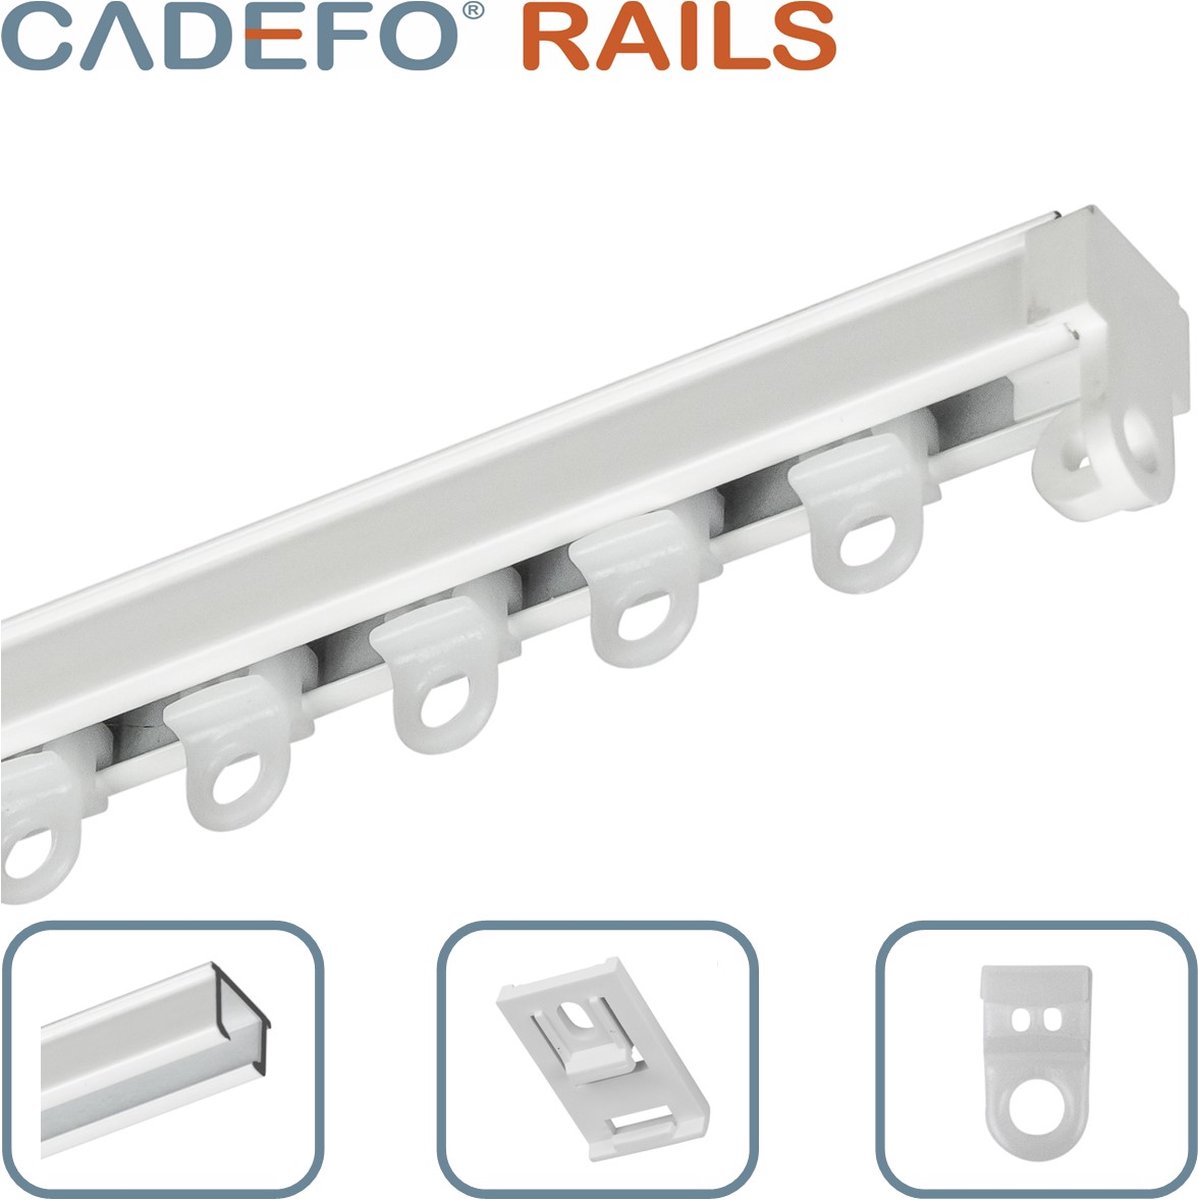 CADEFO RAILS (501 - 550 cm) Gordijnrails - Compleet op maat! - UIT 1 STUK - Leverbaar tot 6 meter - Plafondbevestiging - Lengte 515 cm